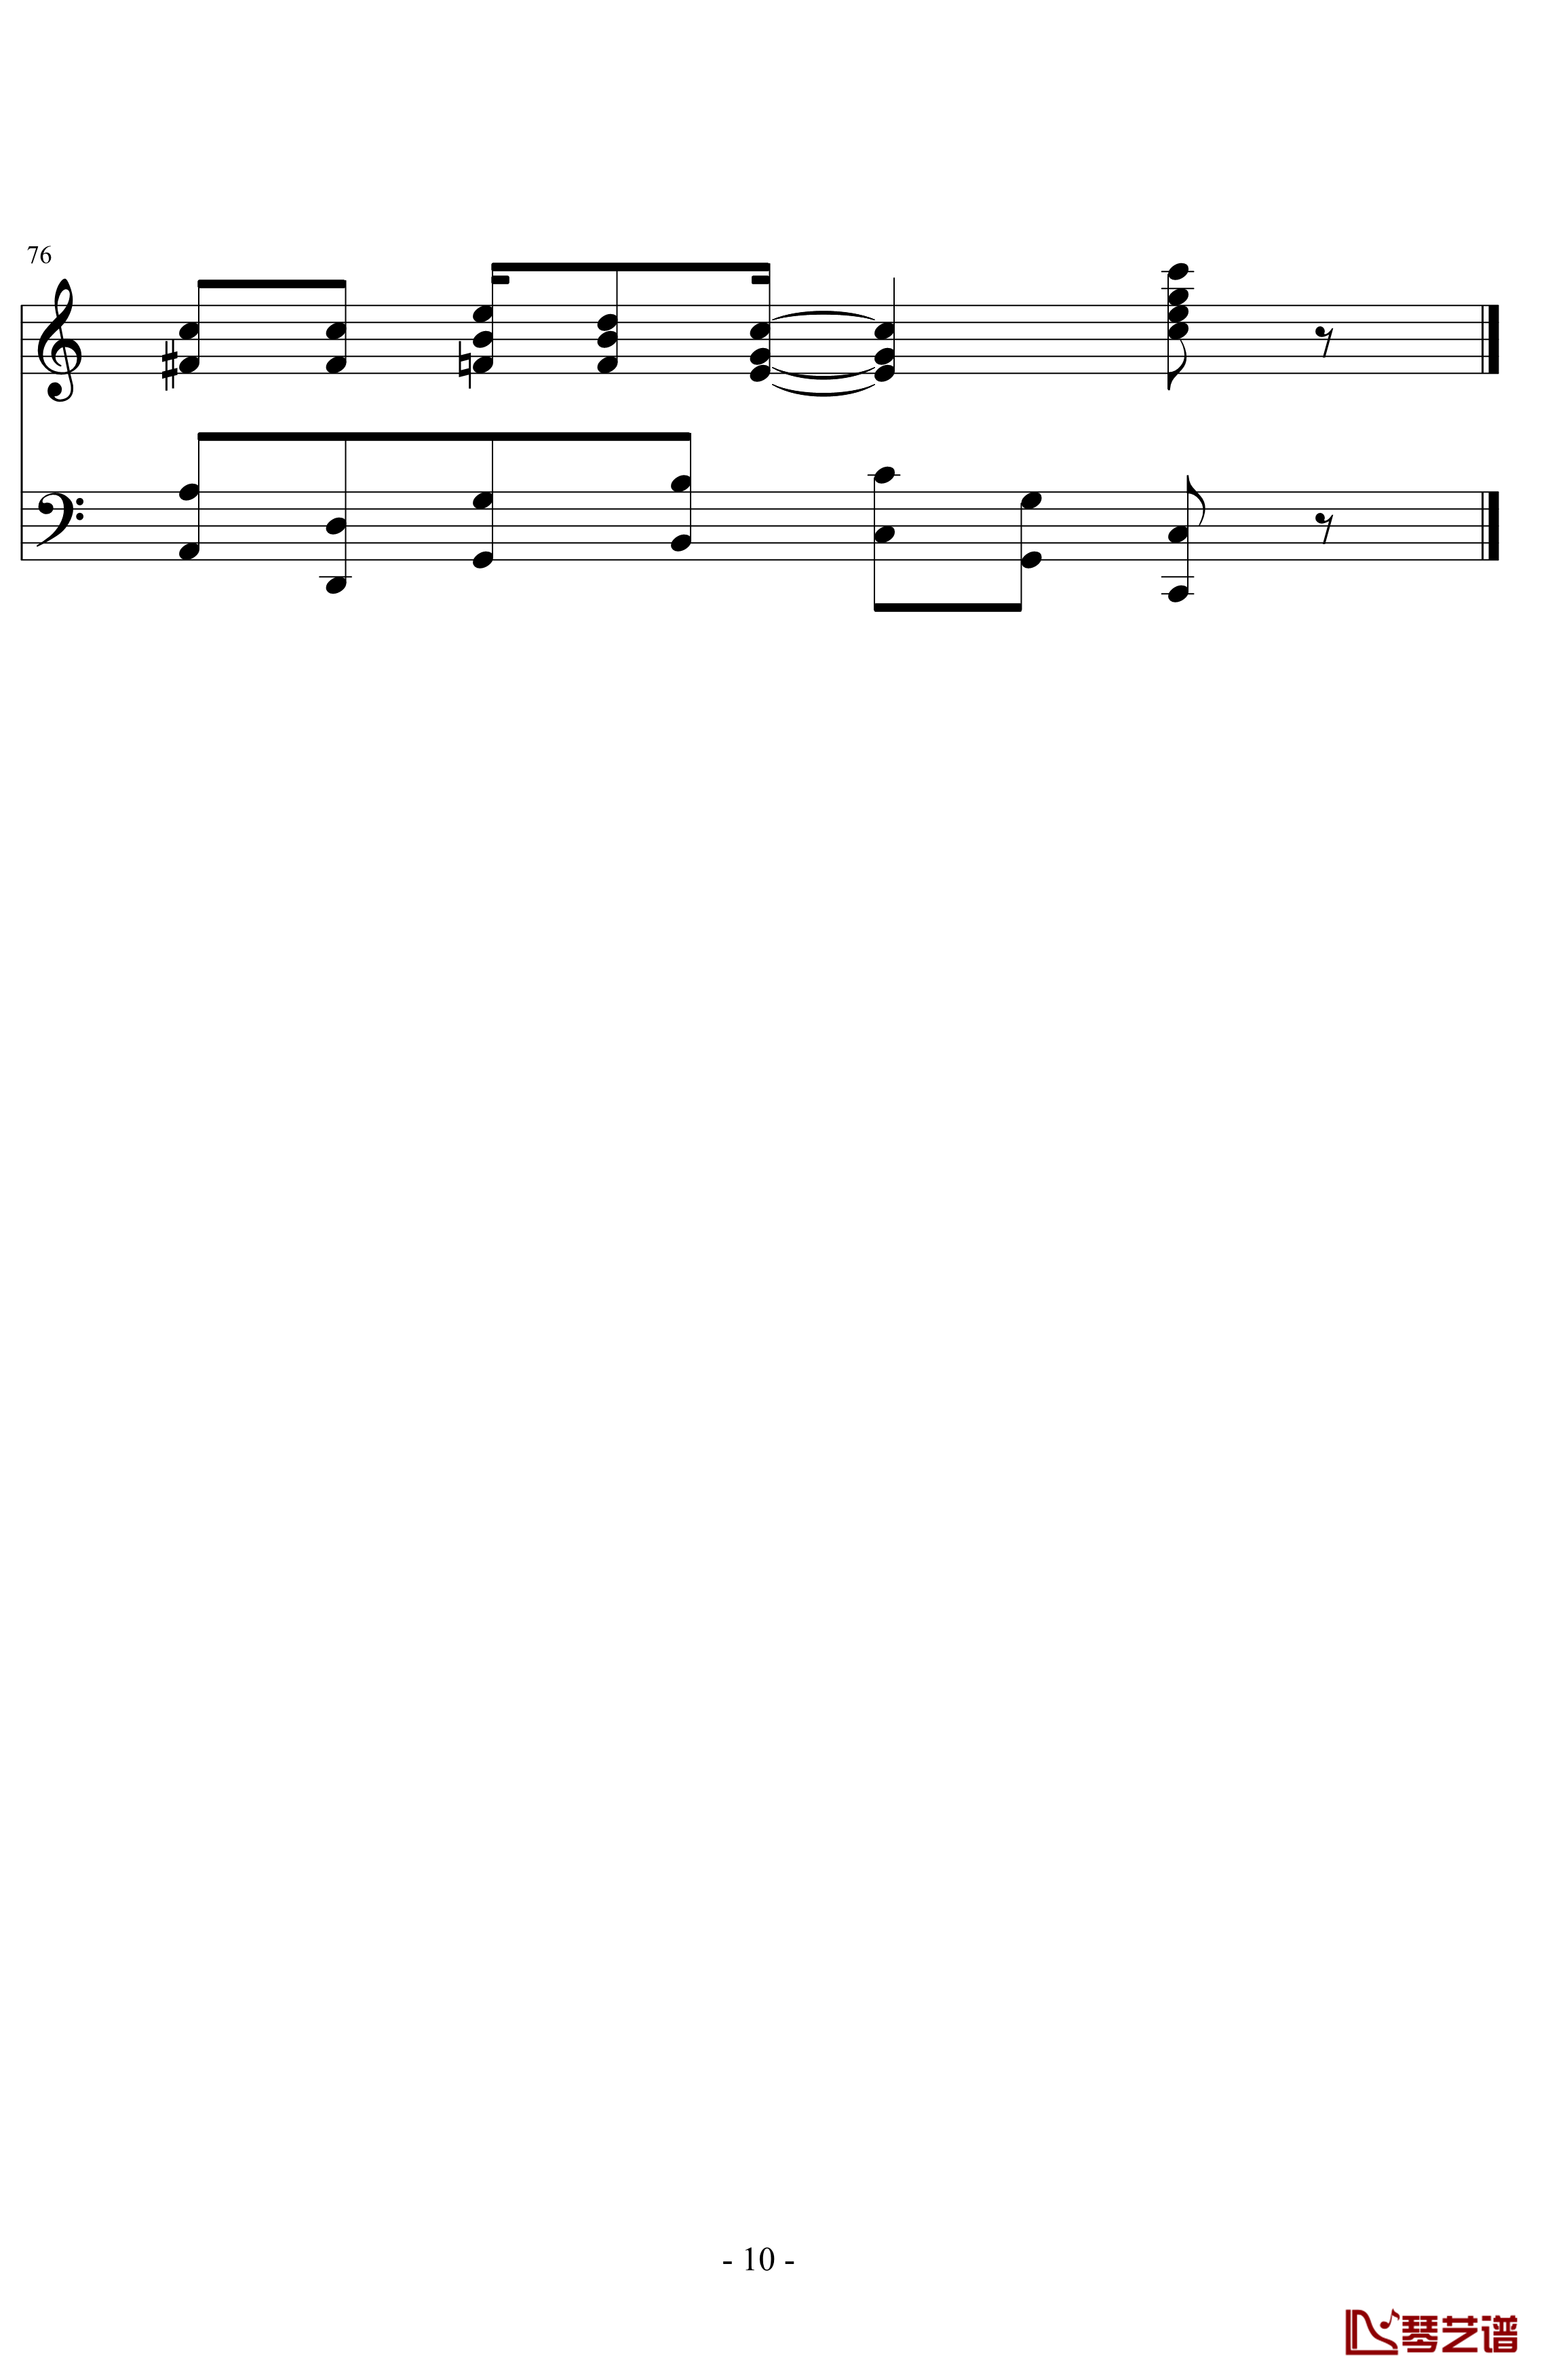 the entertainer钢琴谱-完整版-拉格泰姆-Scott Joplin10